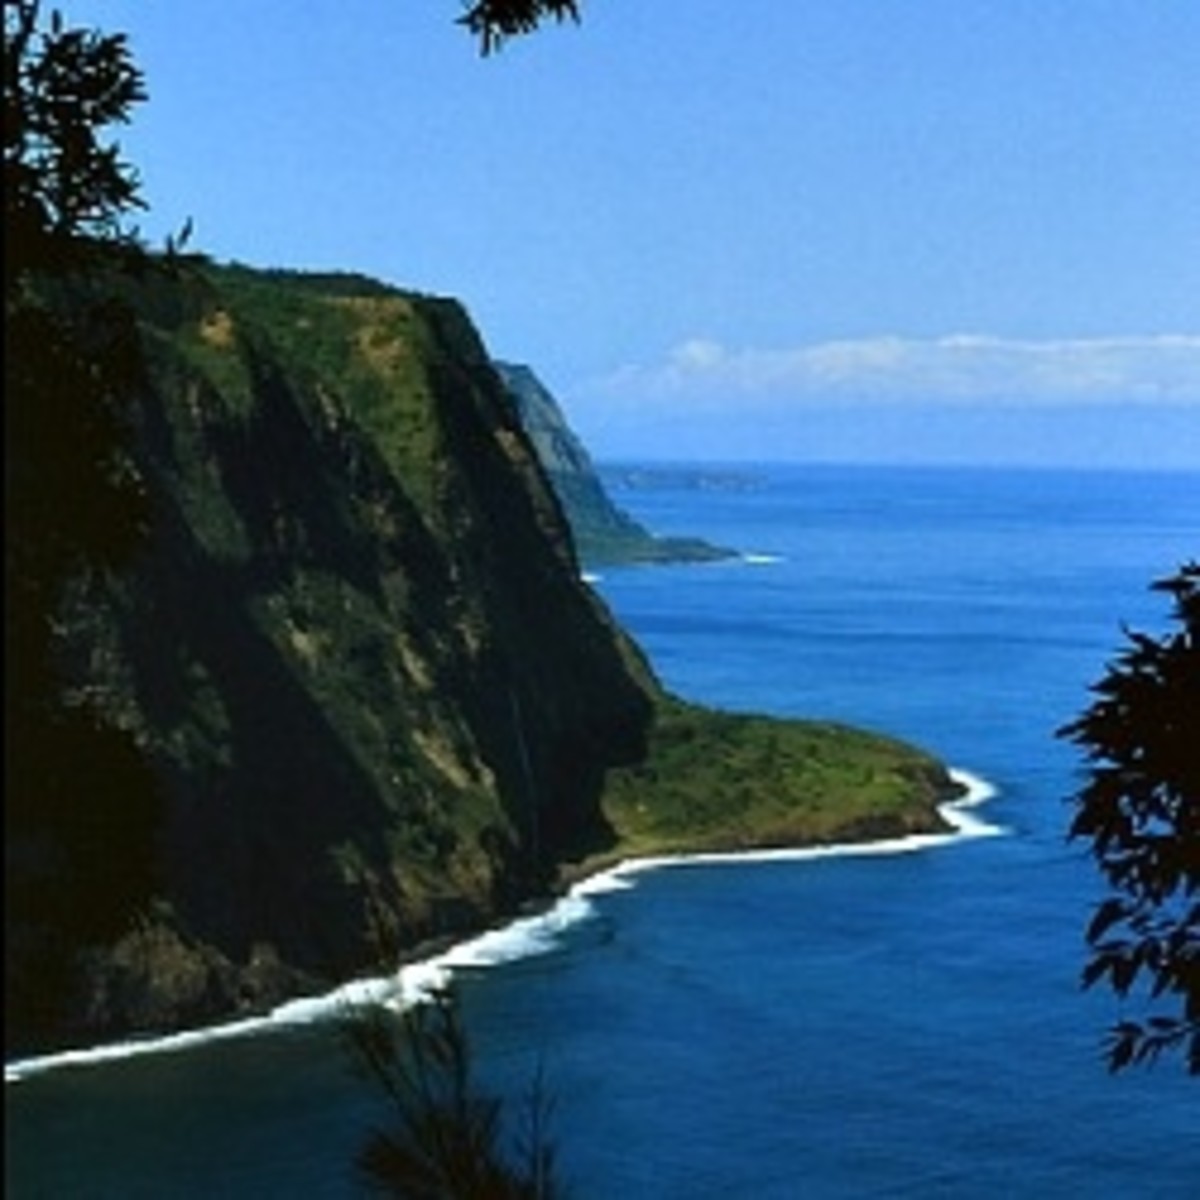 Big Island of Hawaii - Hamakua Coast